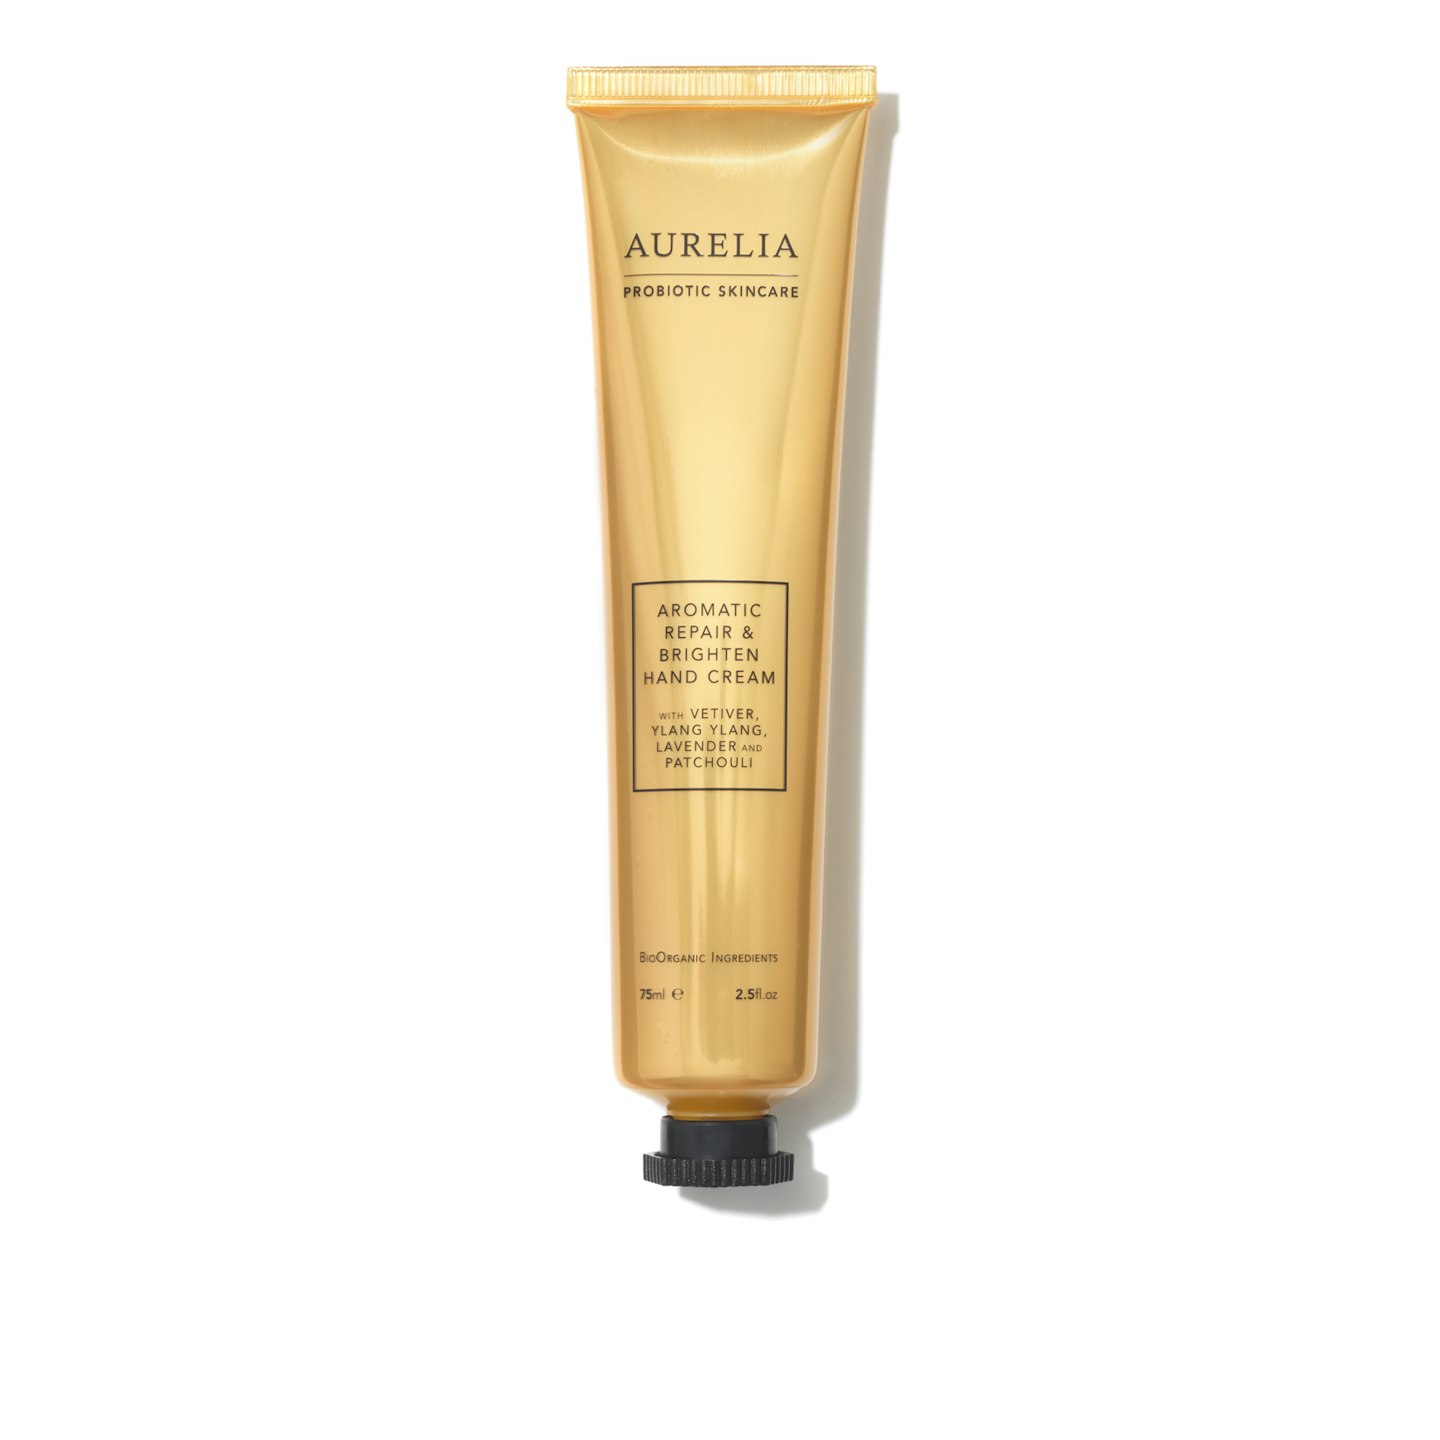 Aurelia Aromatic Repair and Brighten Hand Cream